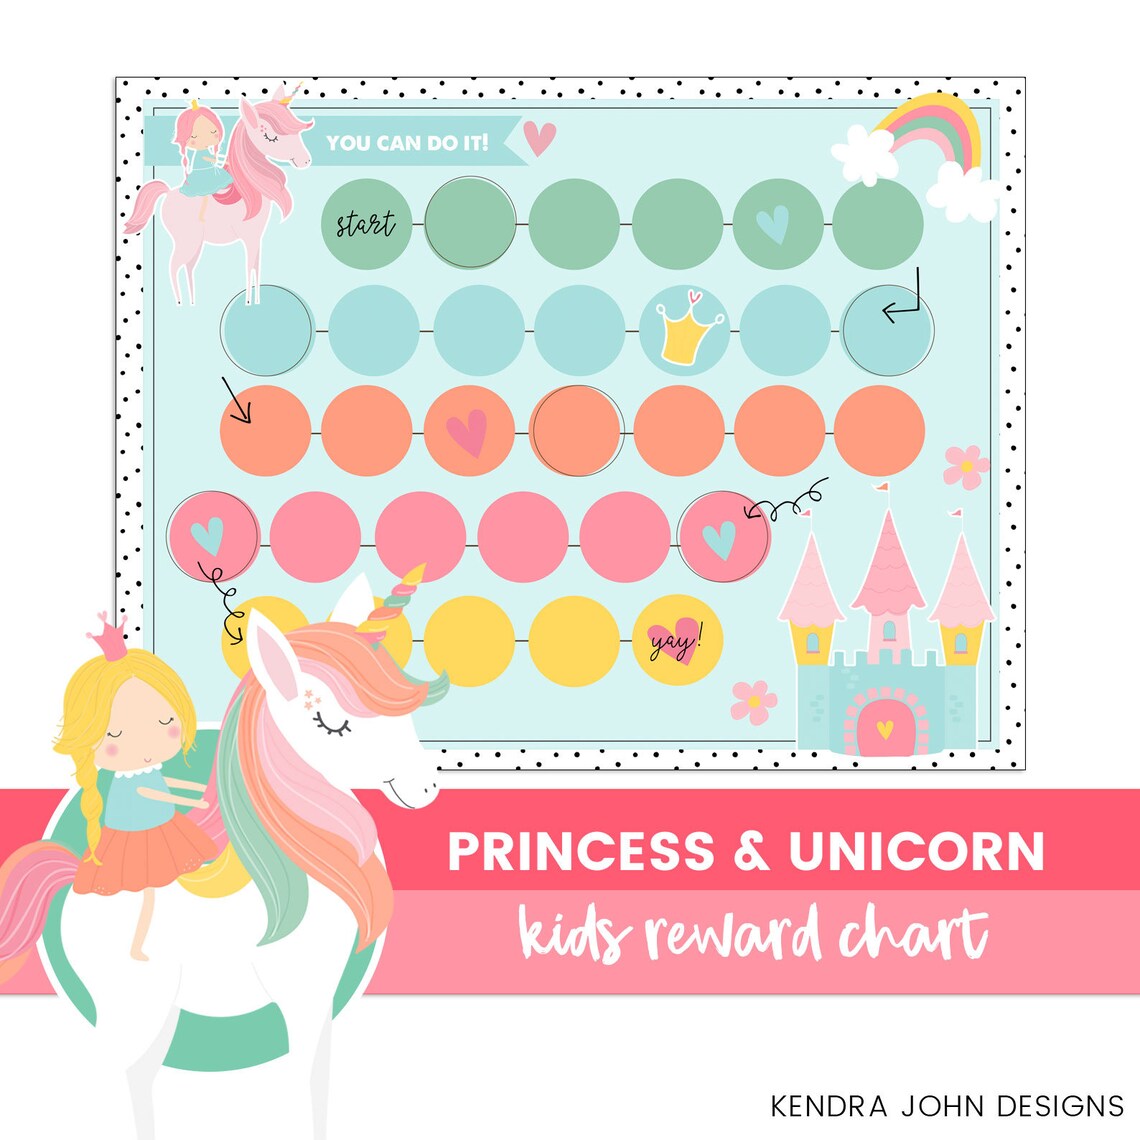 Reward Chart Printable Kids Chore Chart Princess and | Etsy